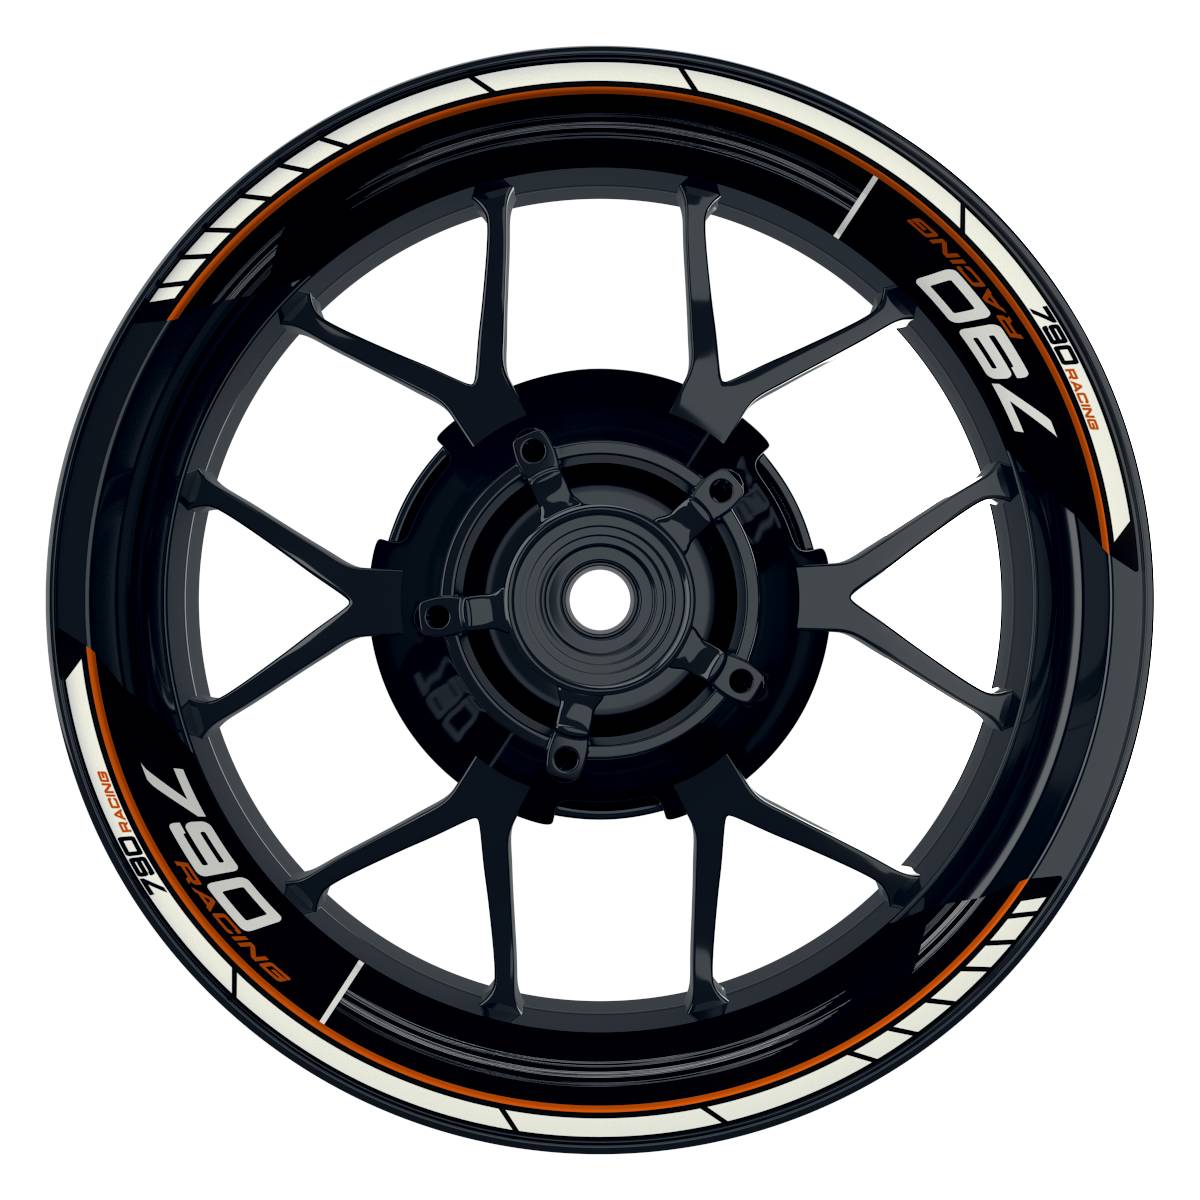 KTM Racing 790 Scratched schwarz orange Frontansicht